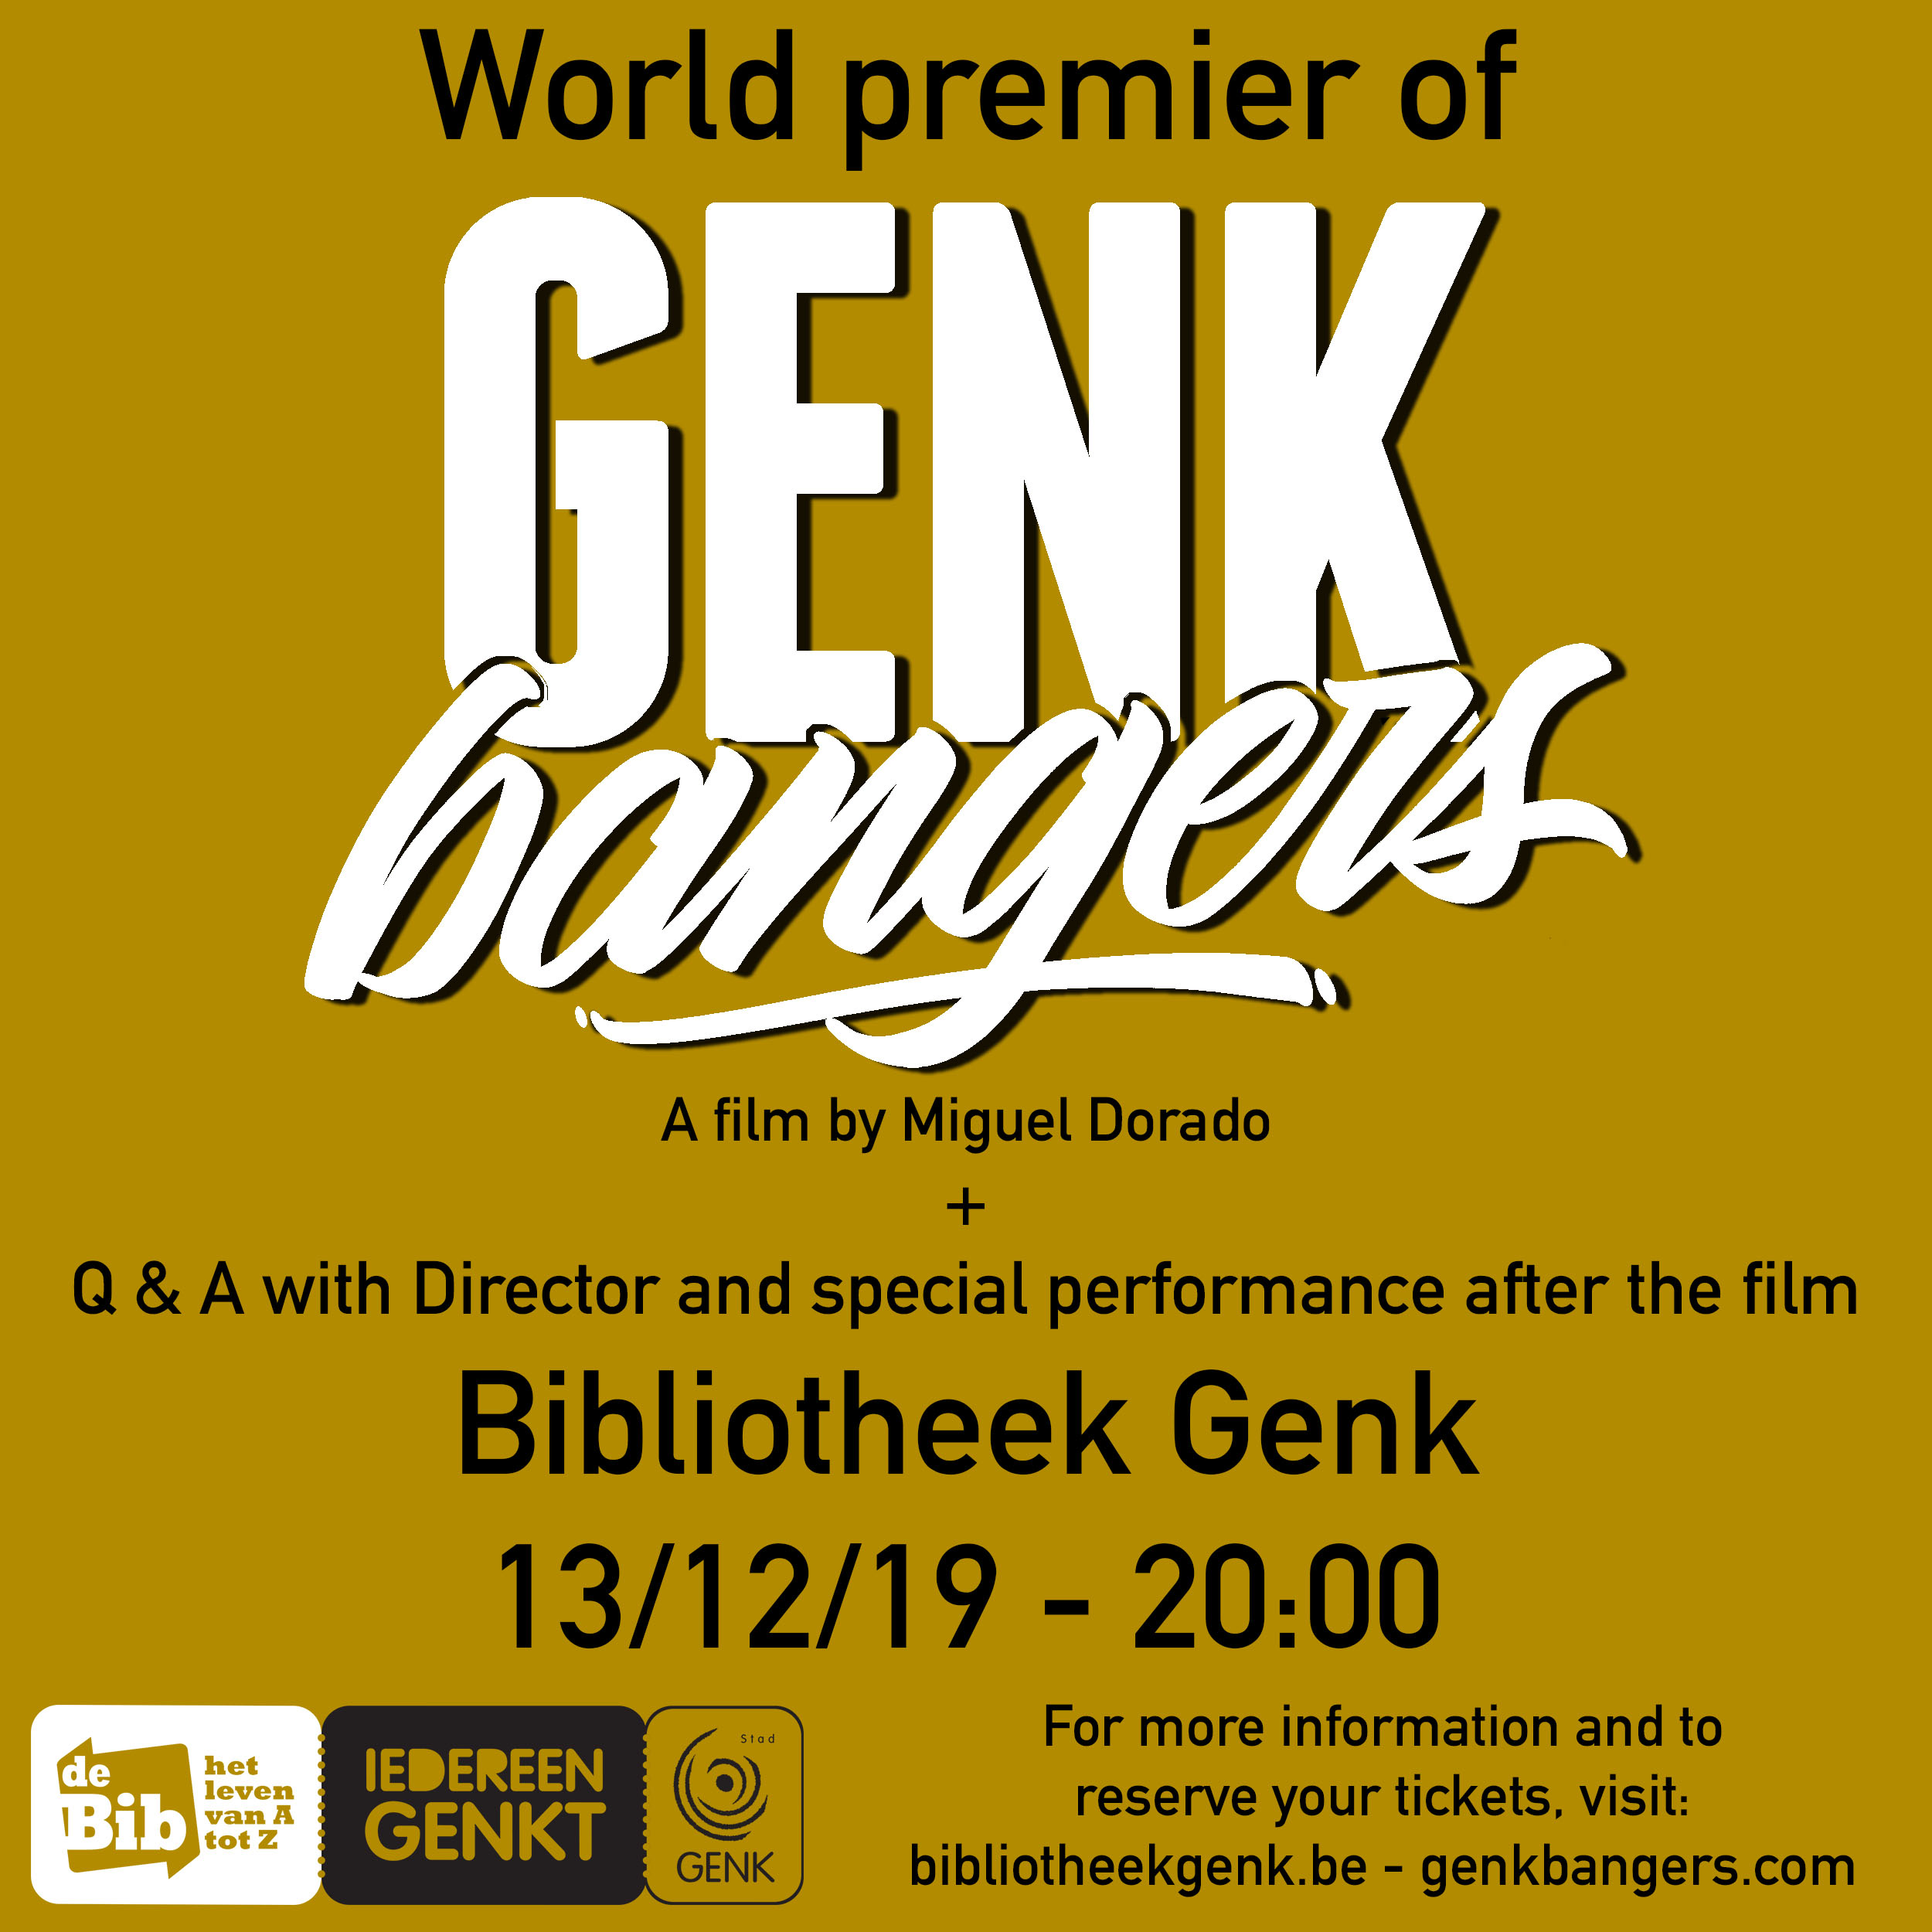 Film premier in Genk, Belgium 13/12/19